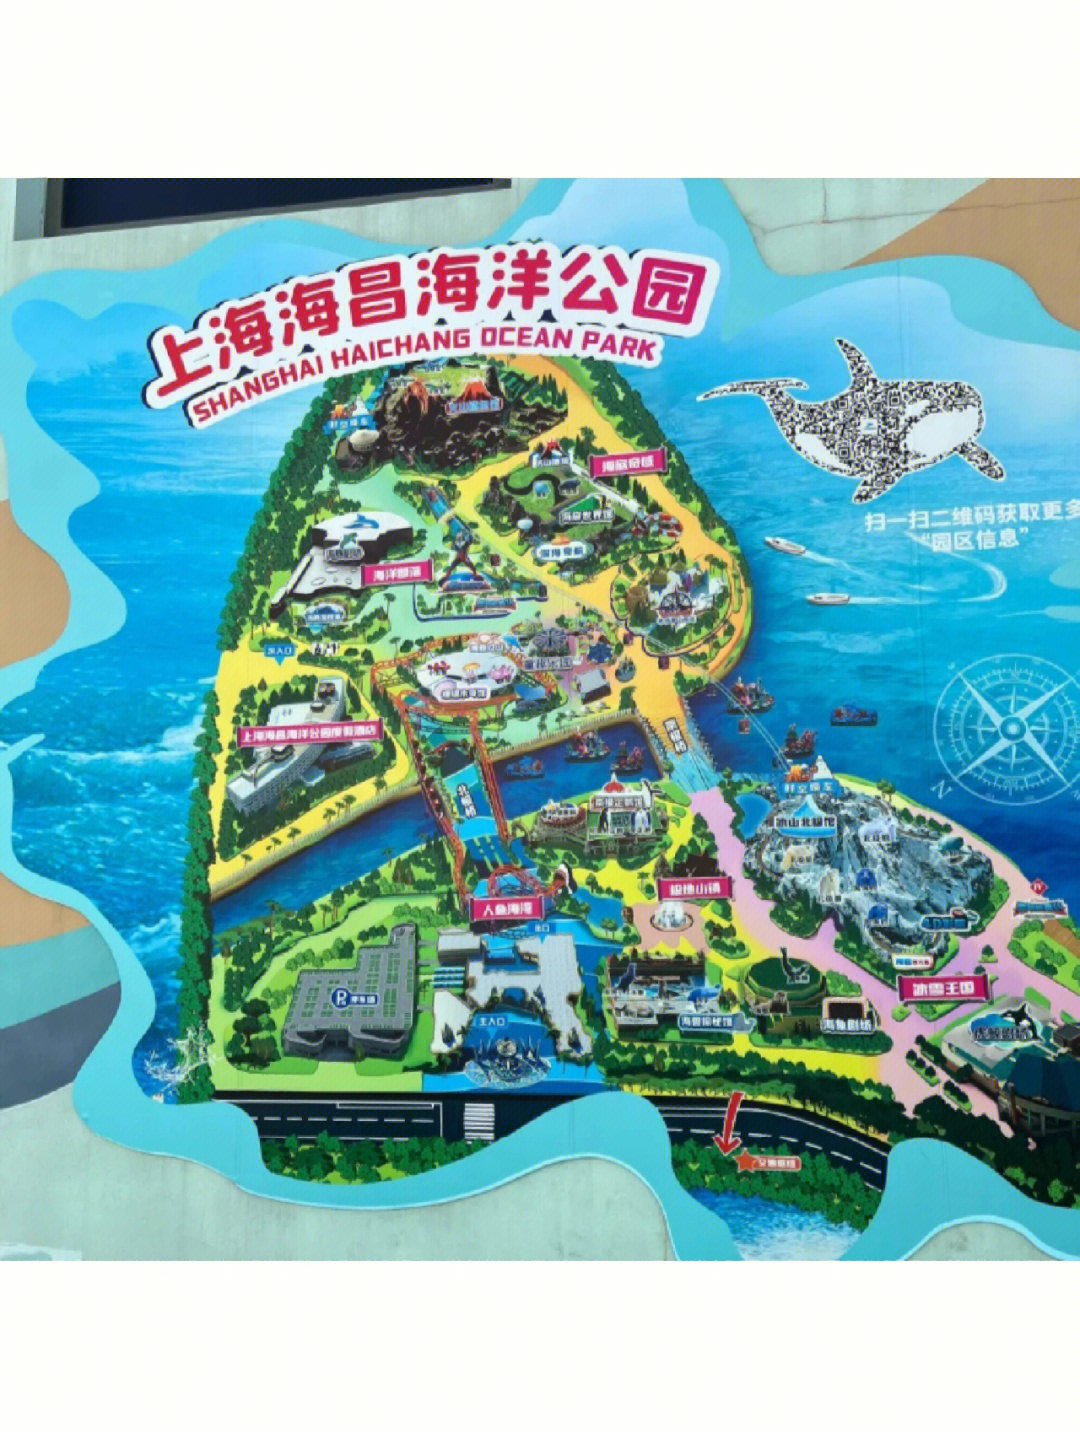 上海海昌海洋公园介绍图片